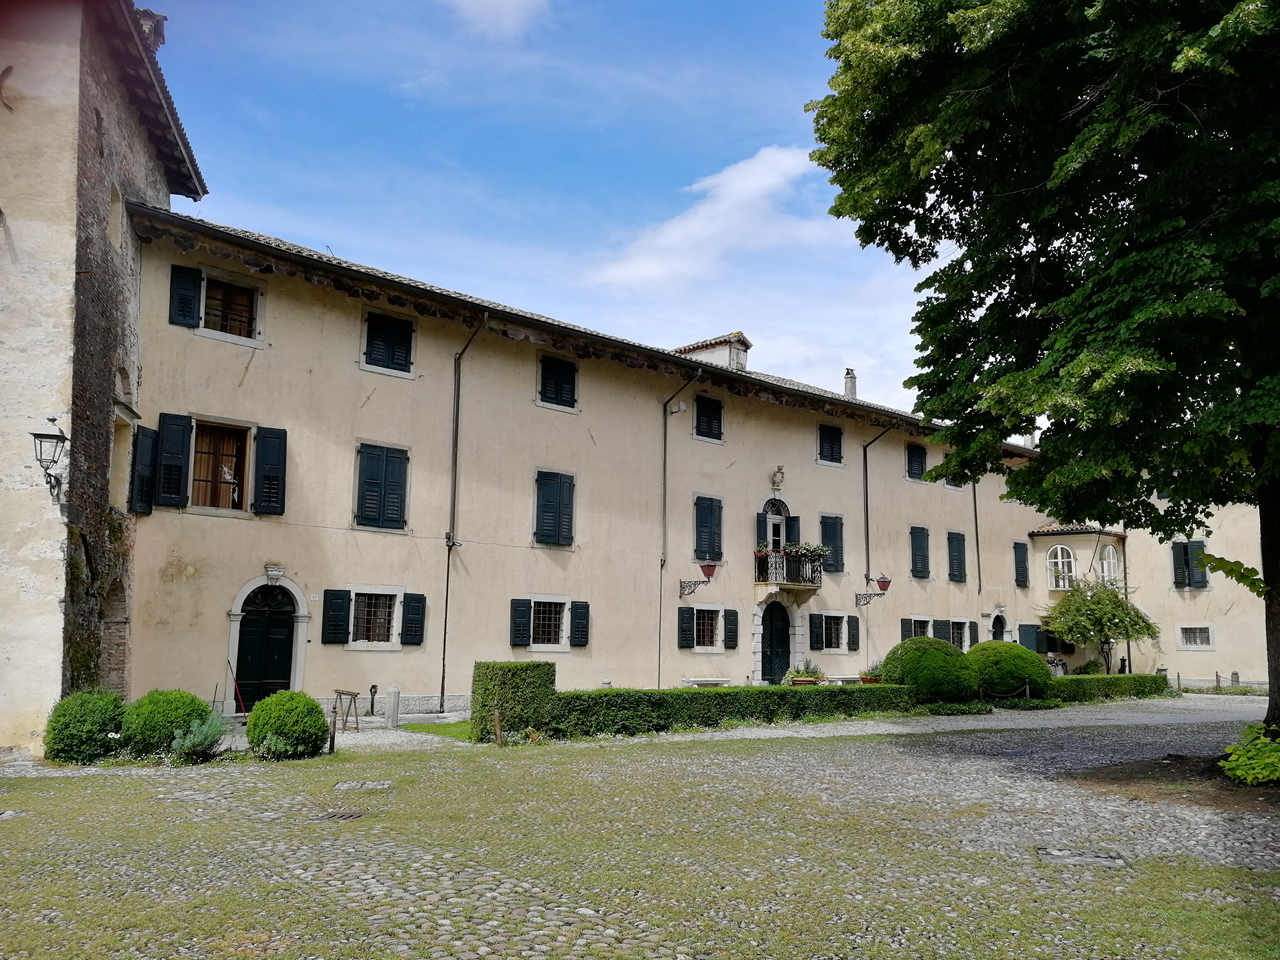 Castello di Strassoldo di Sopra con cortile e giardino (castello, fortificato) - Cervignano del Friuli (UD) 